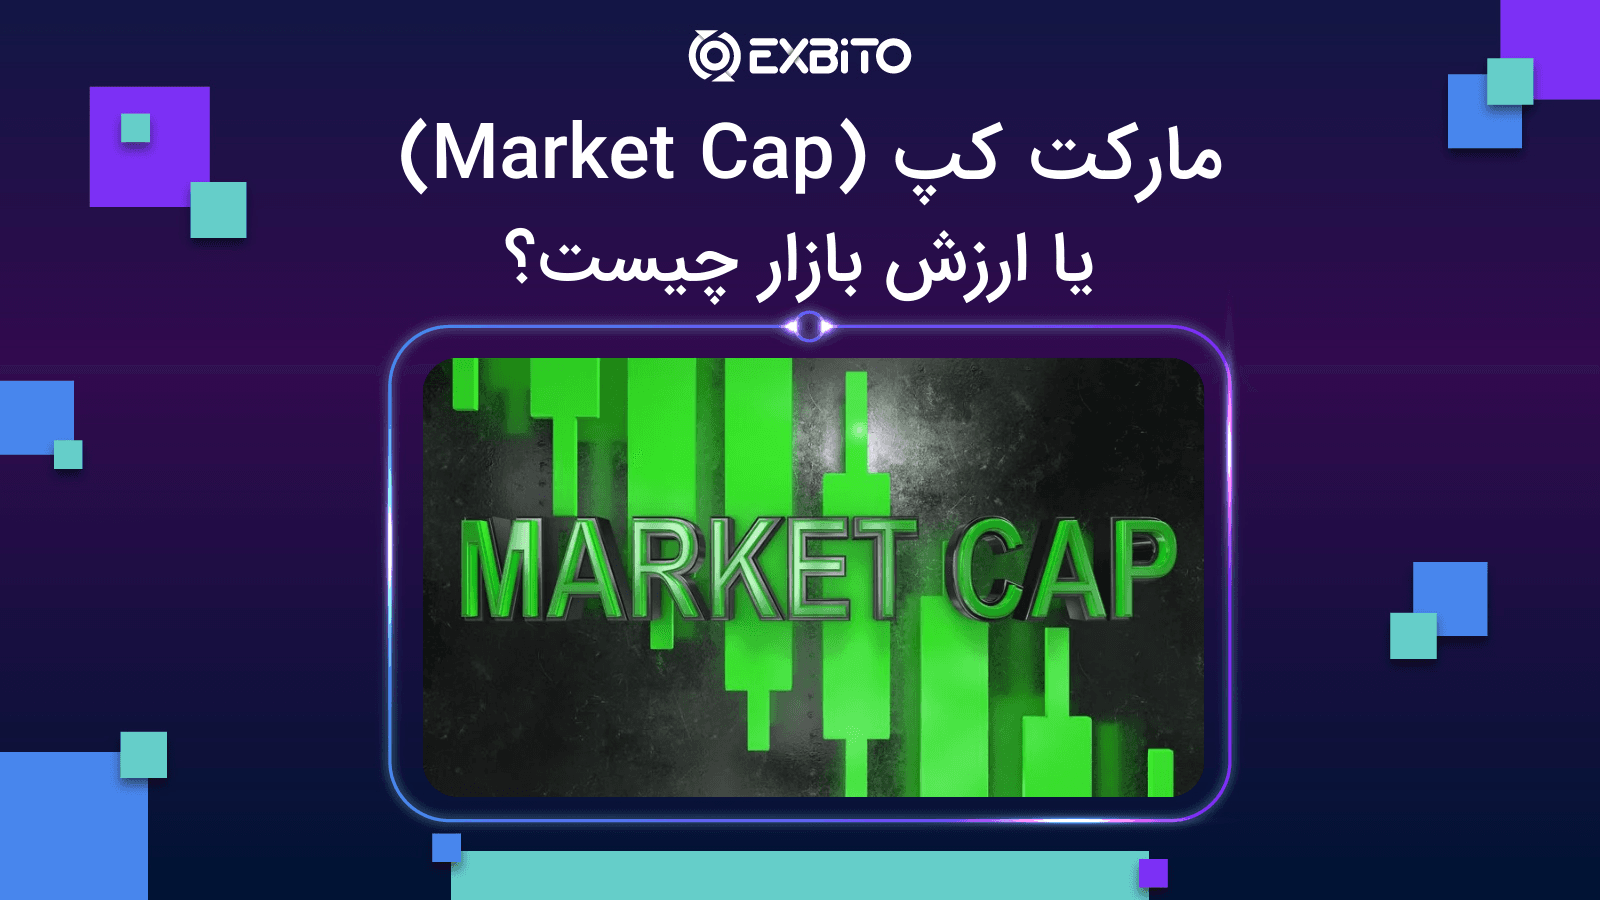 مارکت کپ (Market Cap) یا ارزش بازار چیست؟